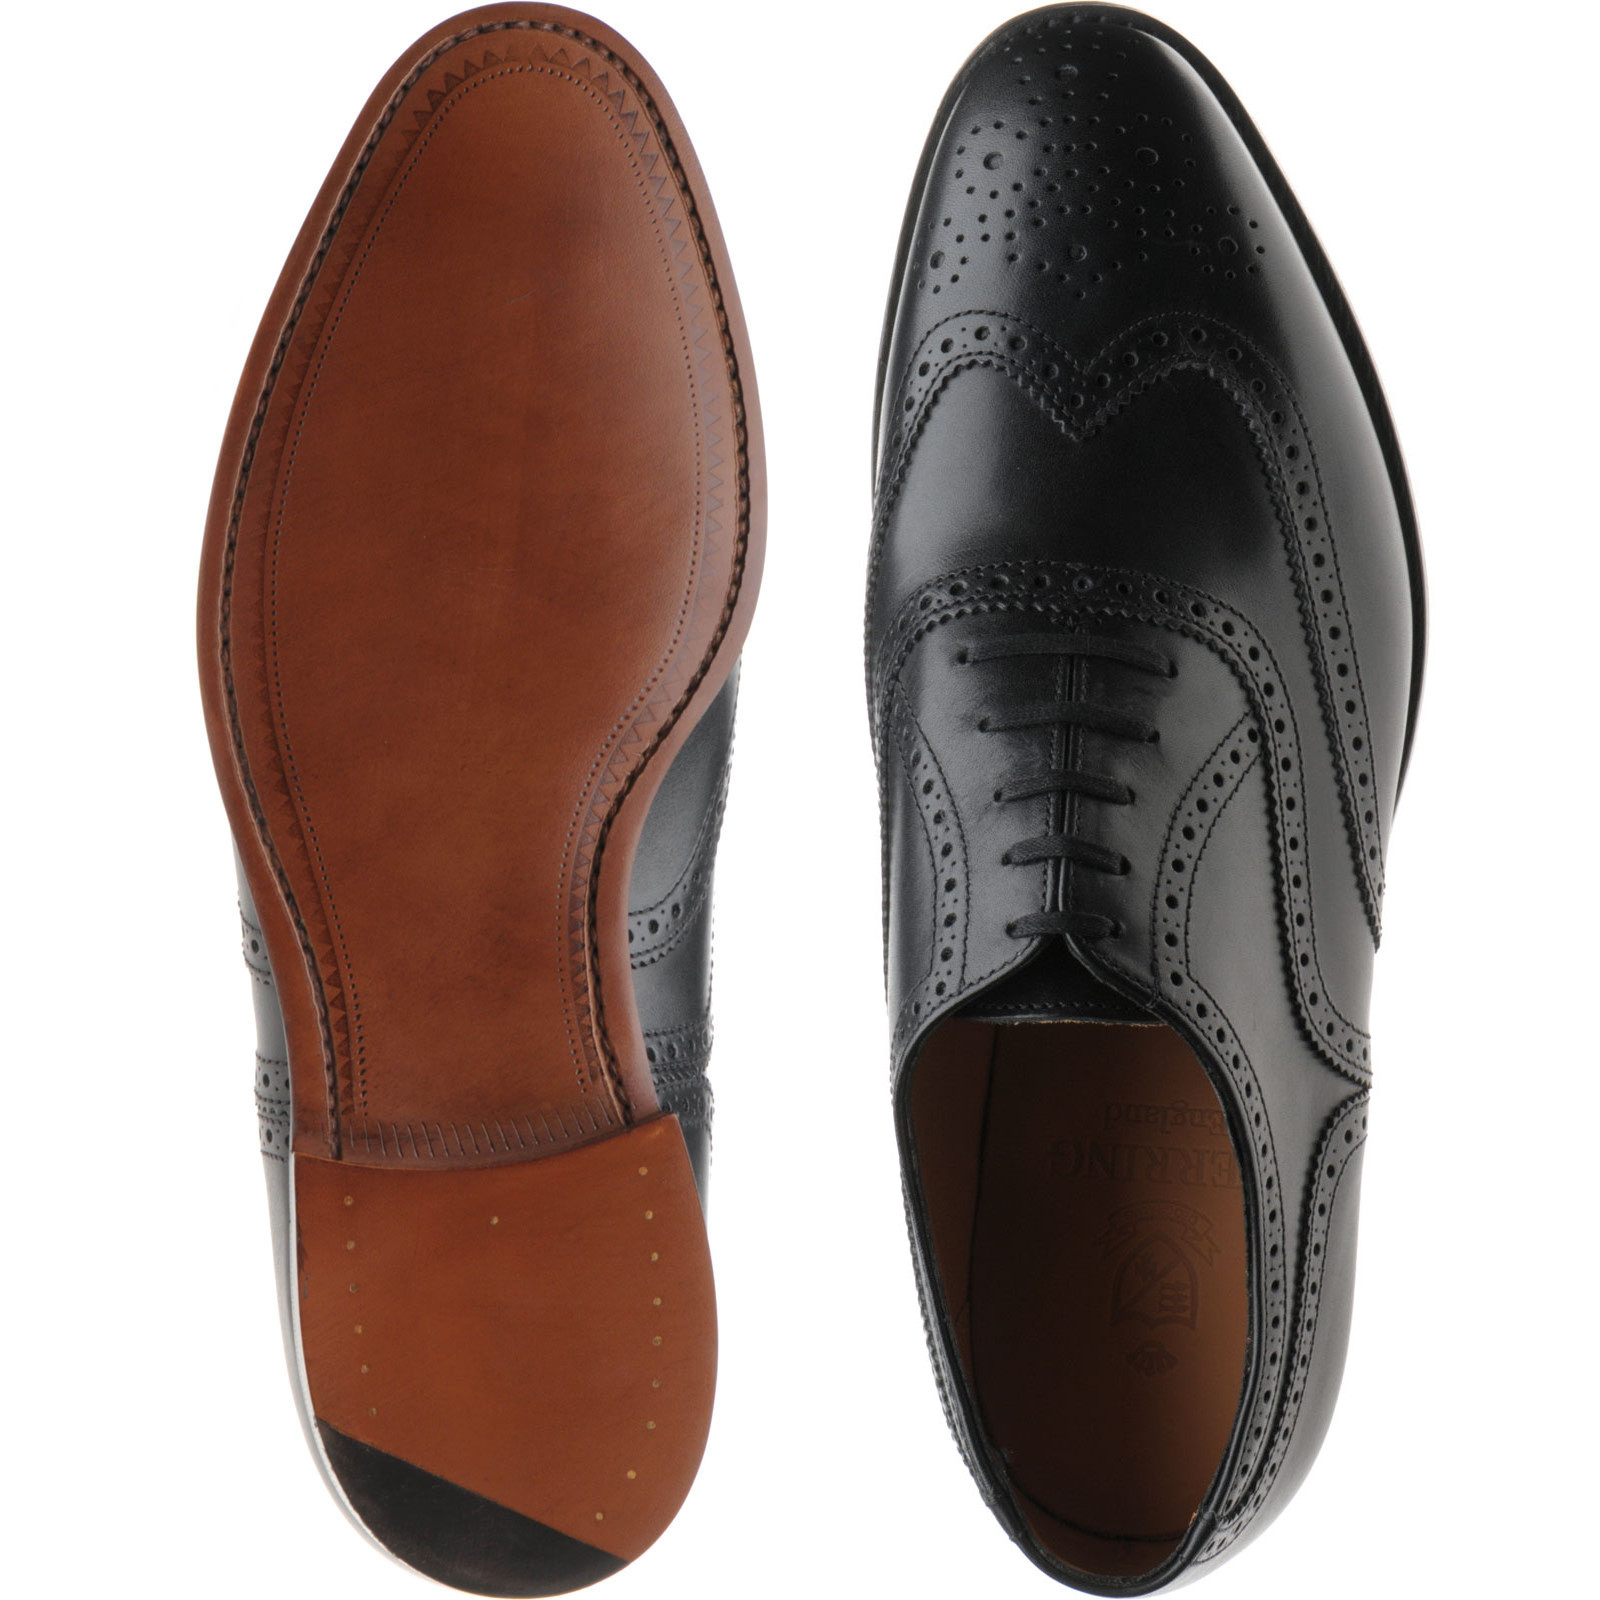 Herring shoes | Herring Premier | Trent brogues in Black Calf at ...